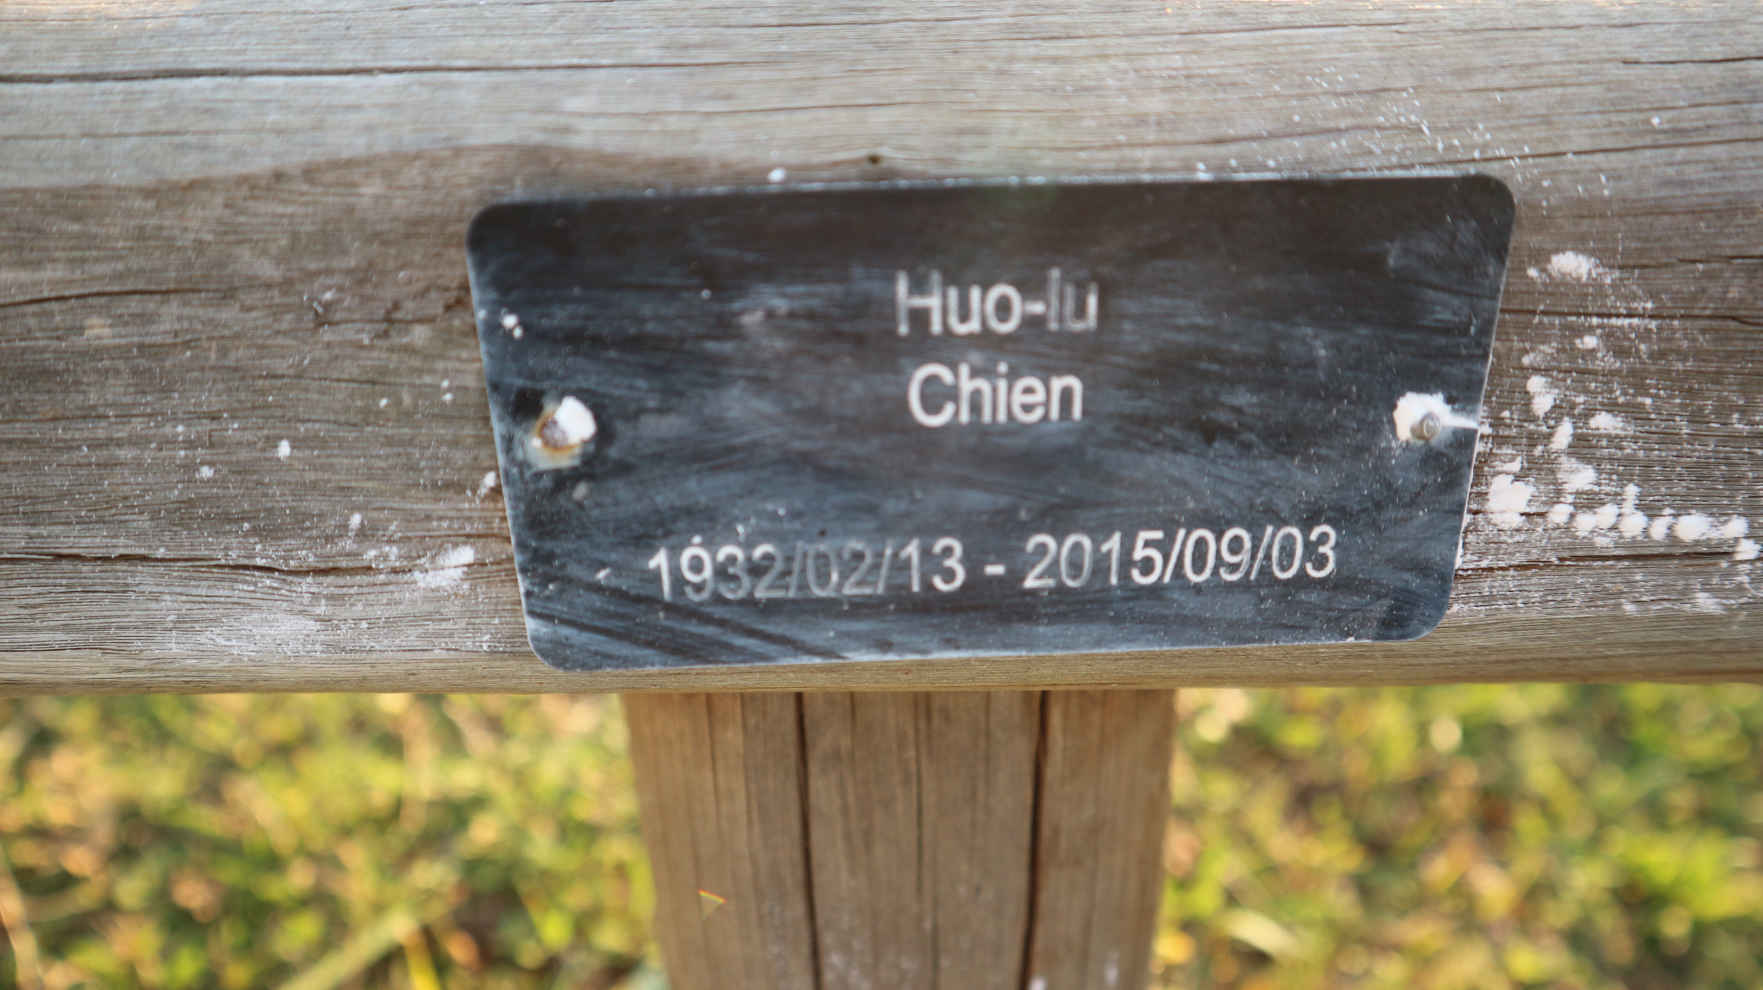 CHIEN Huo-lu 1932-2015